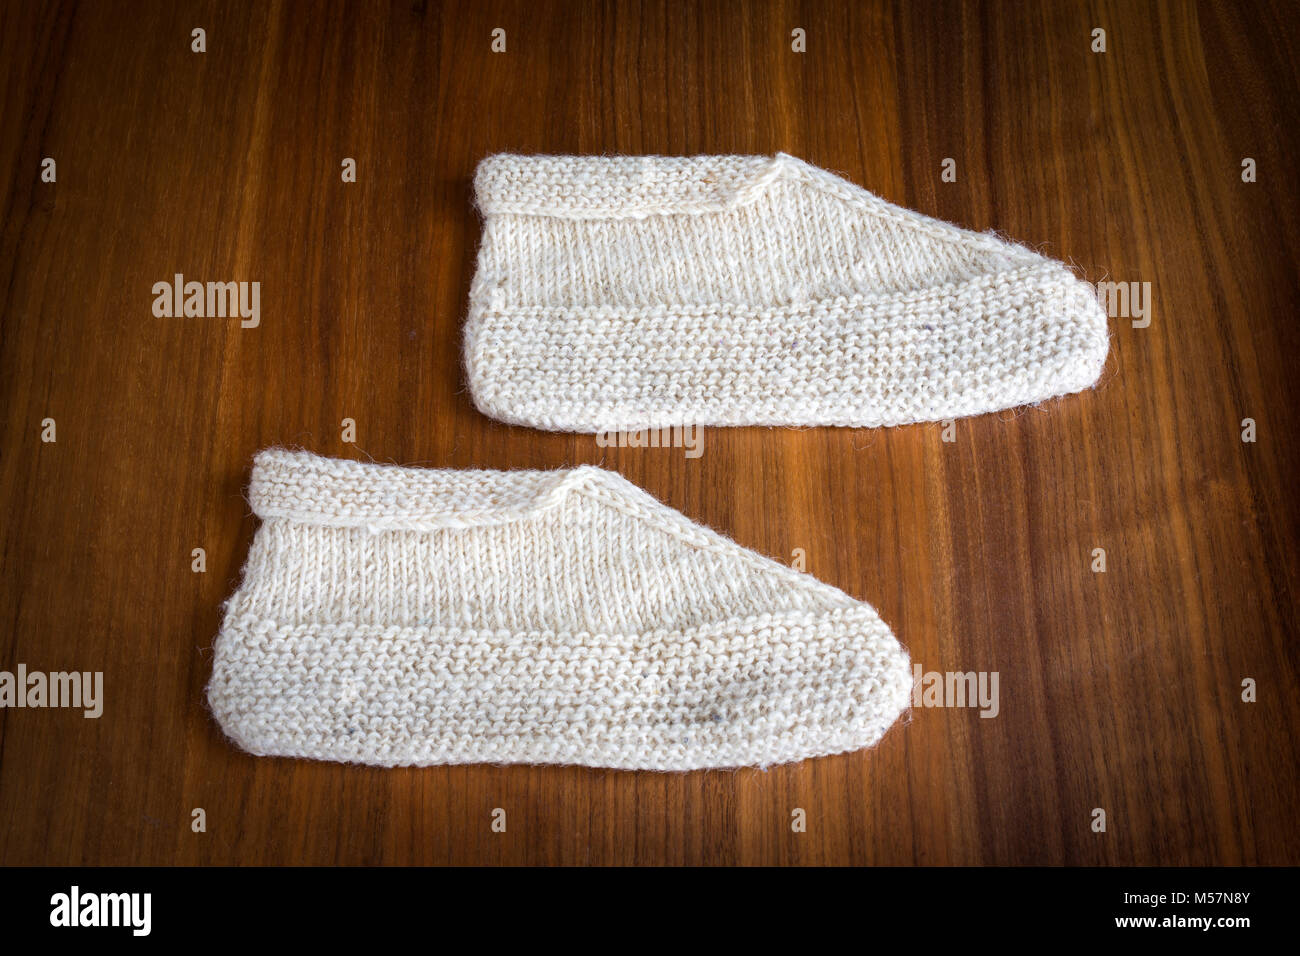 Une production typique de l'artisanat des Balkans : chaussons de laine tricotées à la main. Artisanat des Balkans : chaussons en laine tricotés main. Banque D'Images